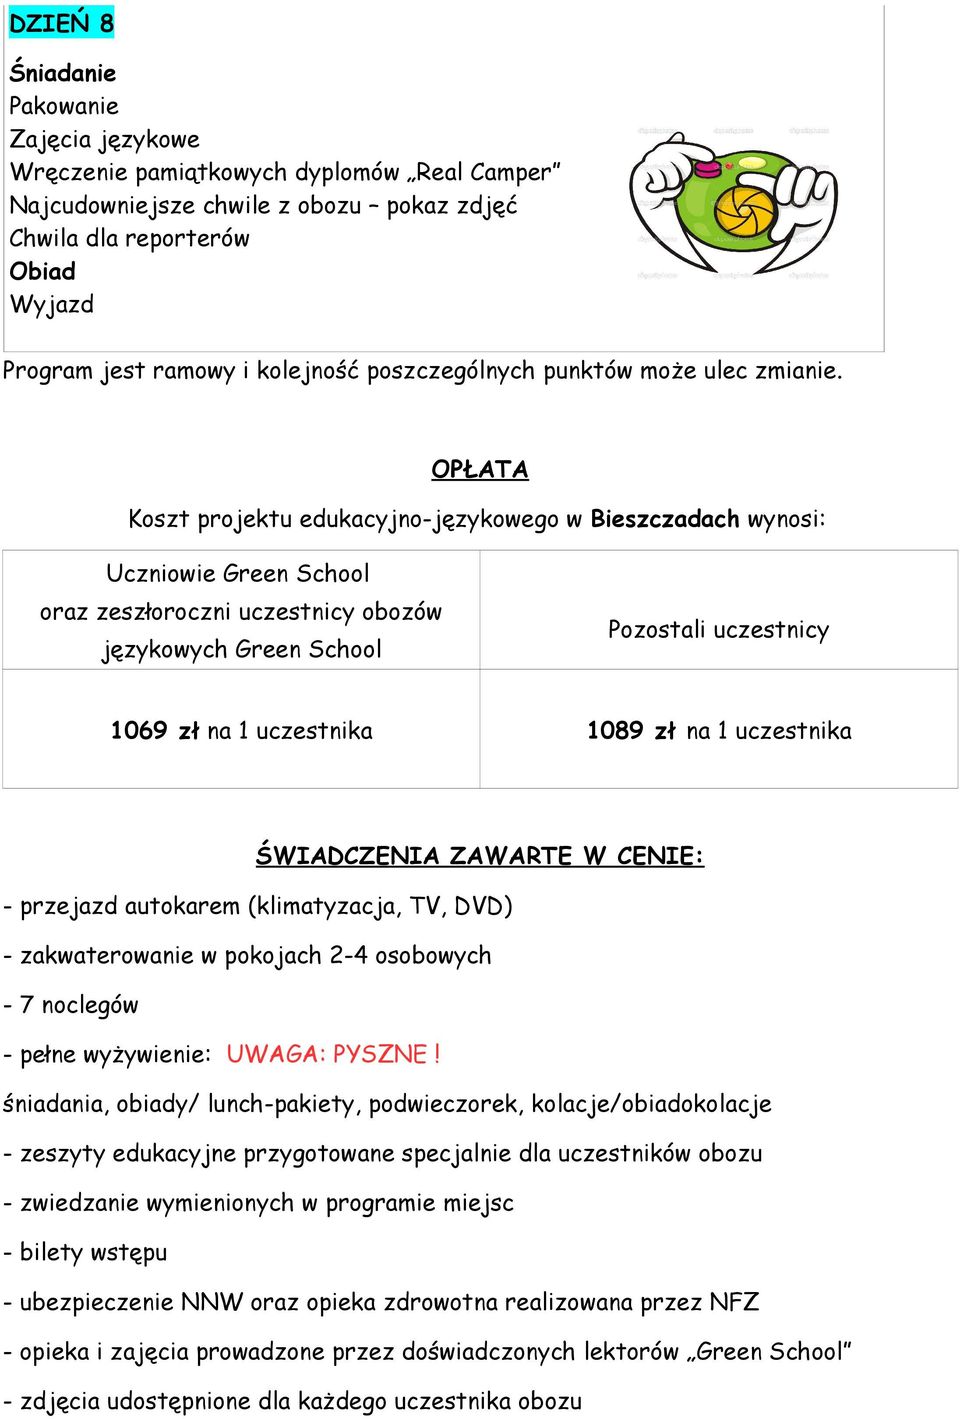 OPŁATA Koszt projektu edukacyjno-językowego w Bieszczadach wynosi: Uczniowie Green School oraz zeszłoroczni uczestnicy obozów językowych Green School 1069 zł na 1 uczestnika Pozostali uczestnicy 1089